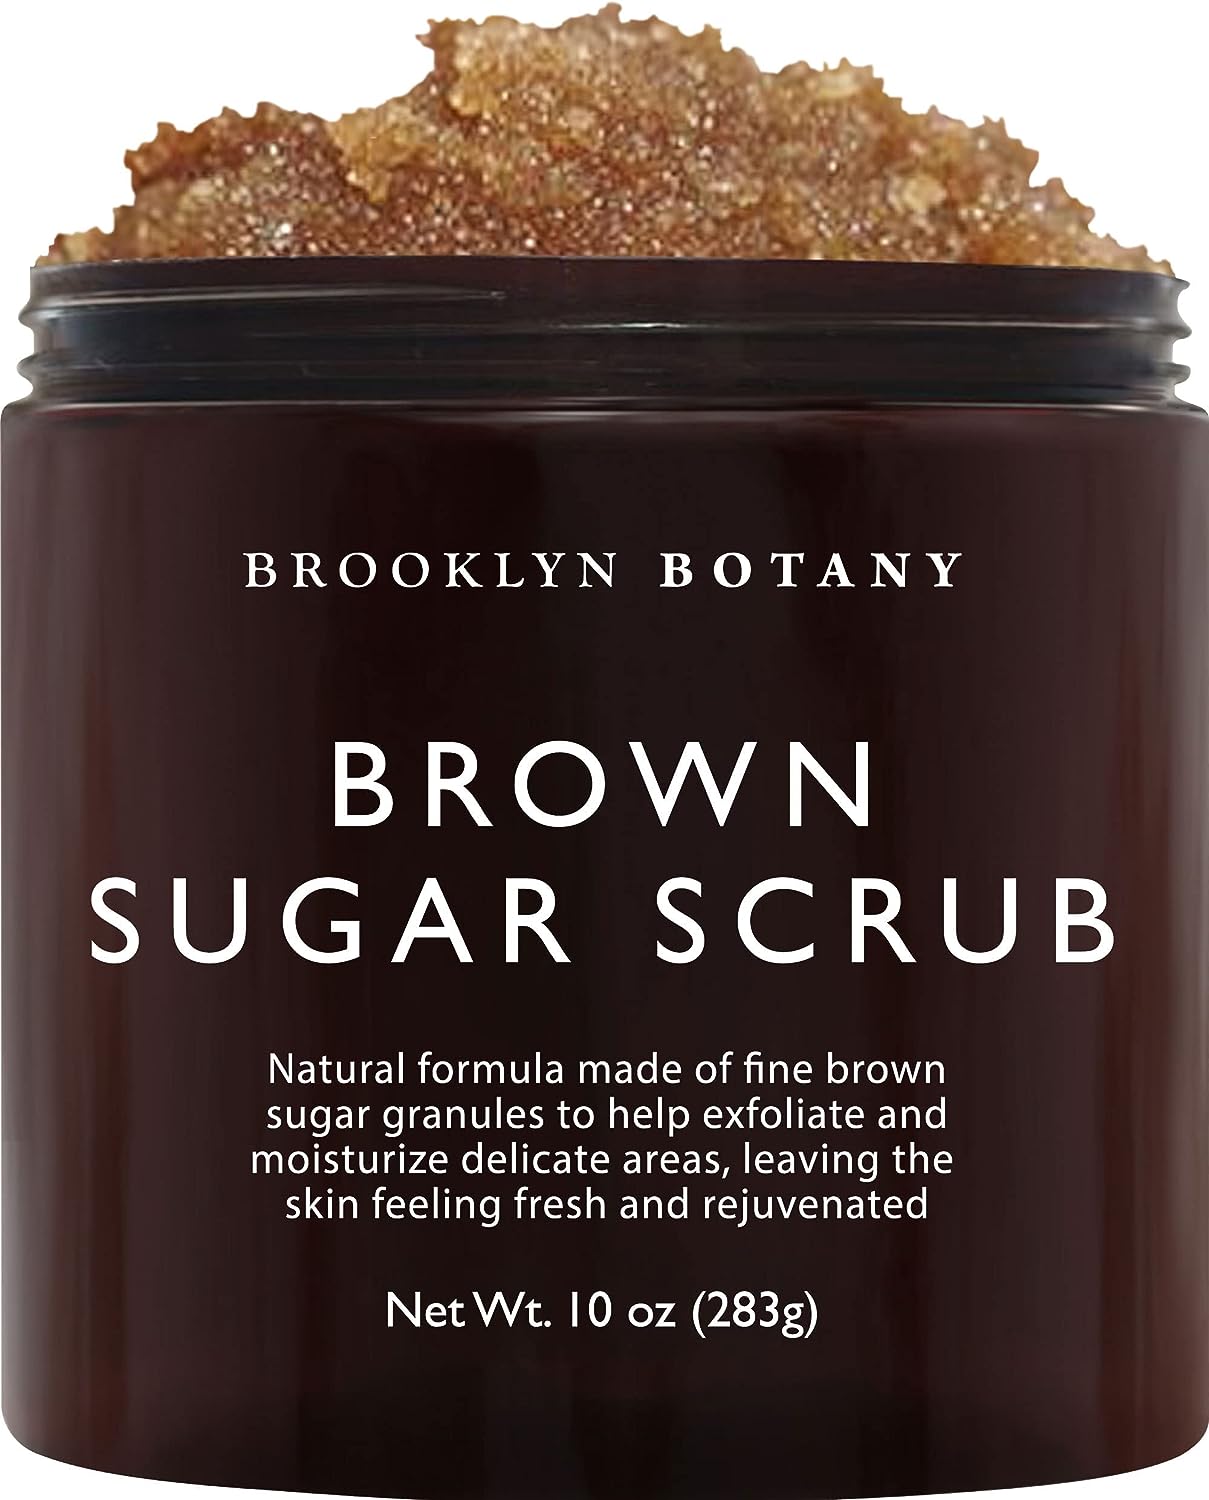 Brooklyn Botany Brown Sugar Body Scrub Review